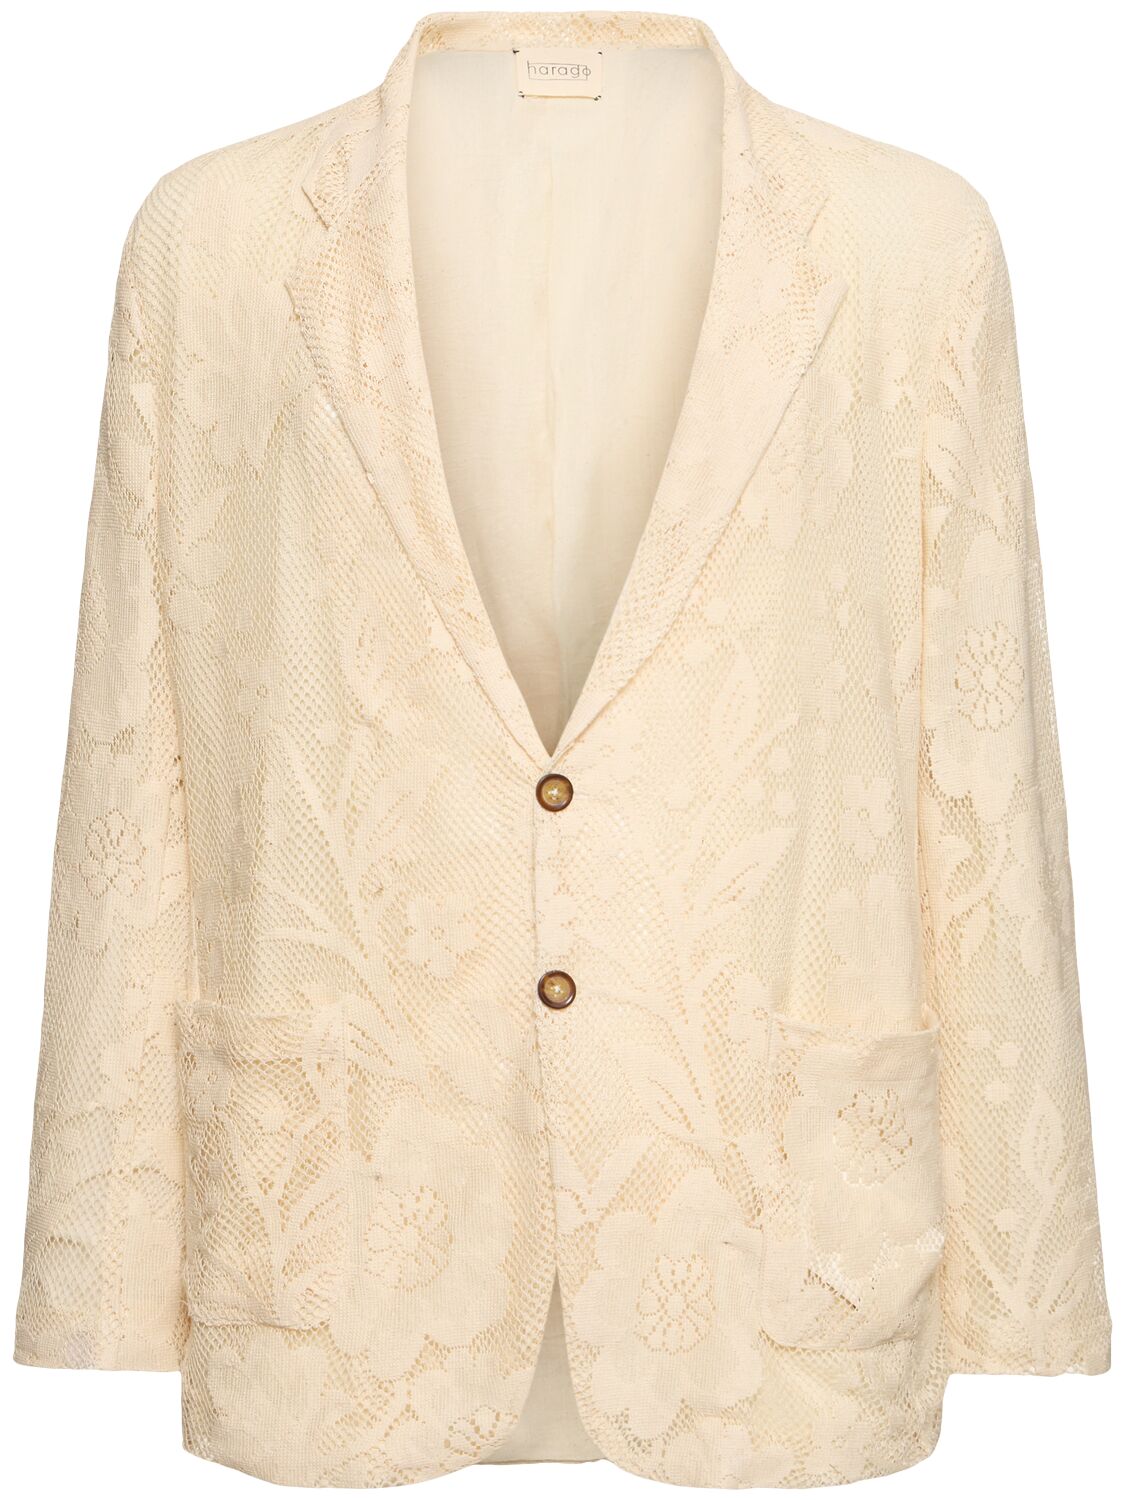 Harago Cotton Lace Blazer In Off White